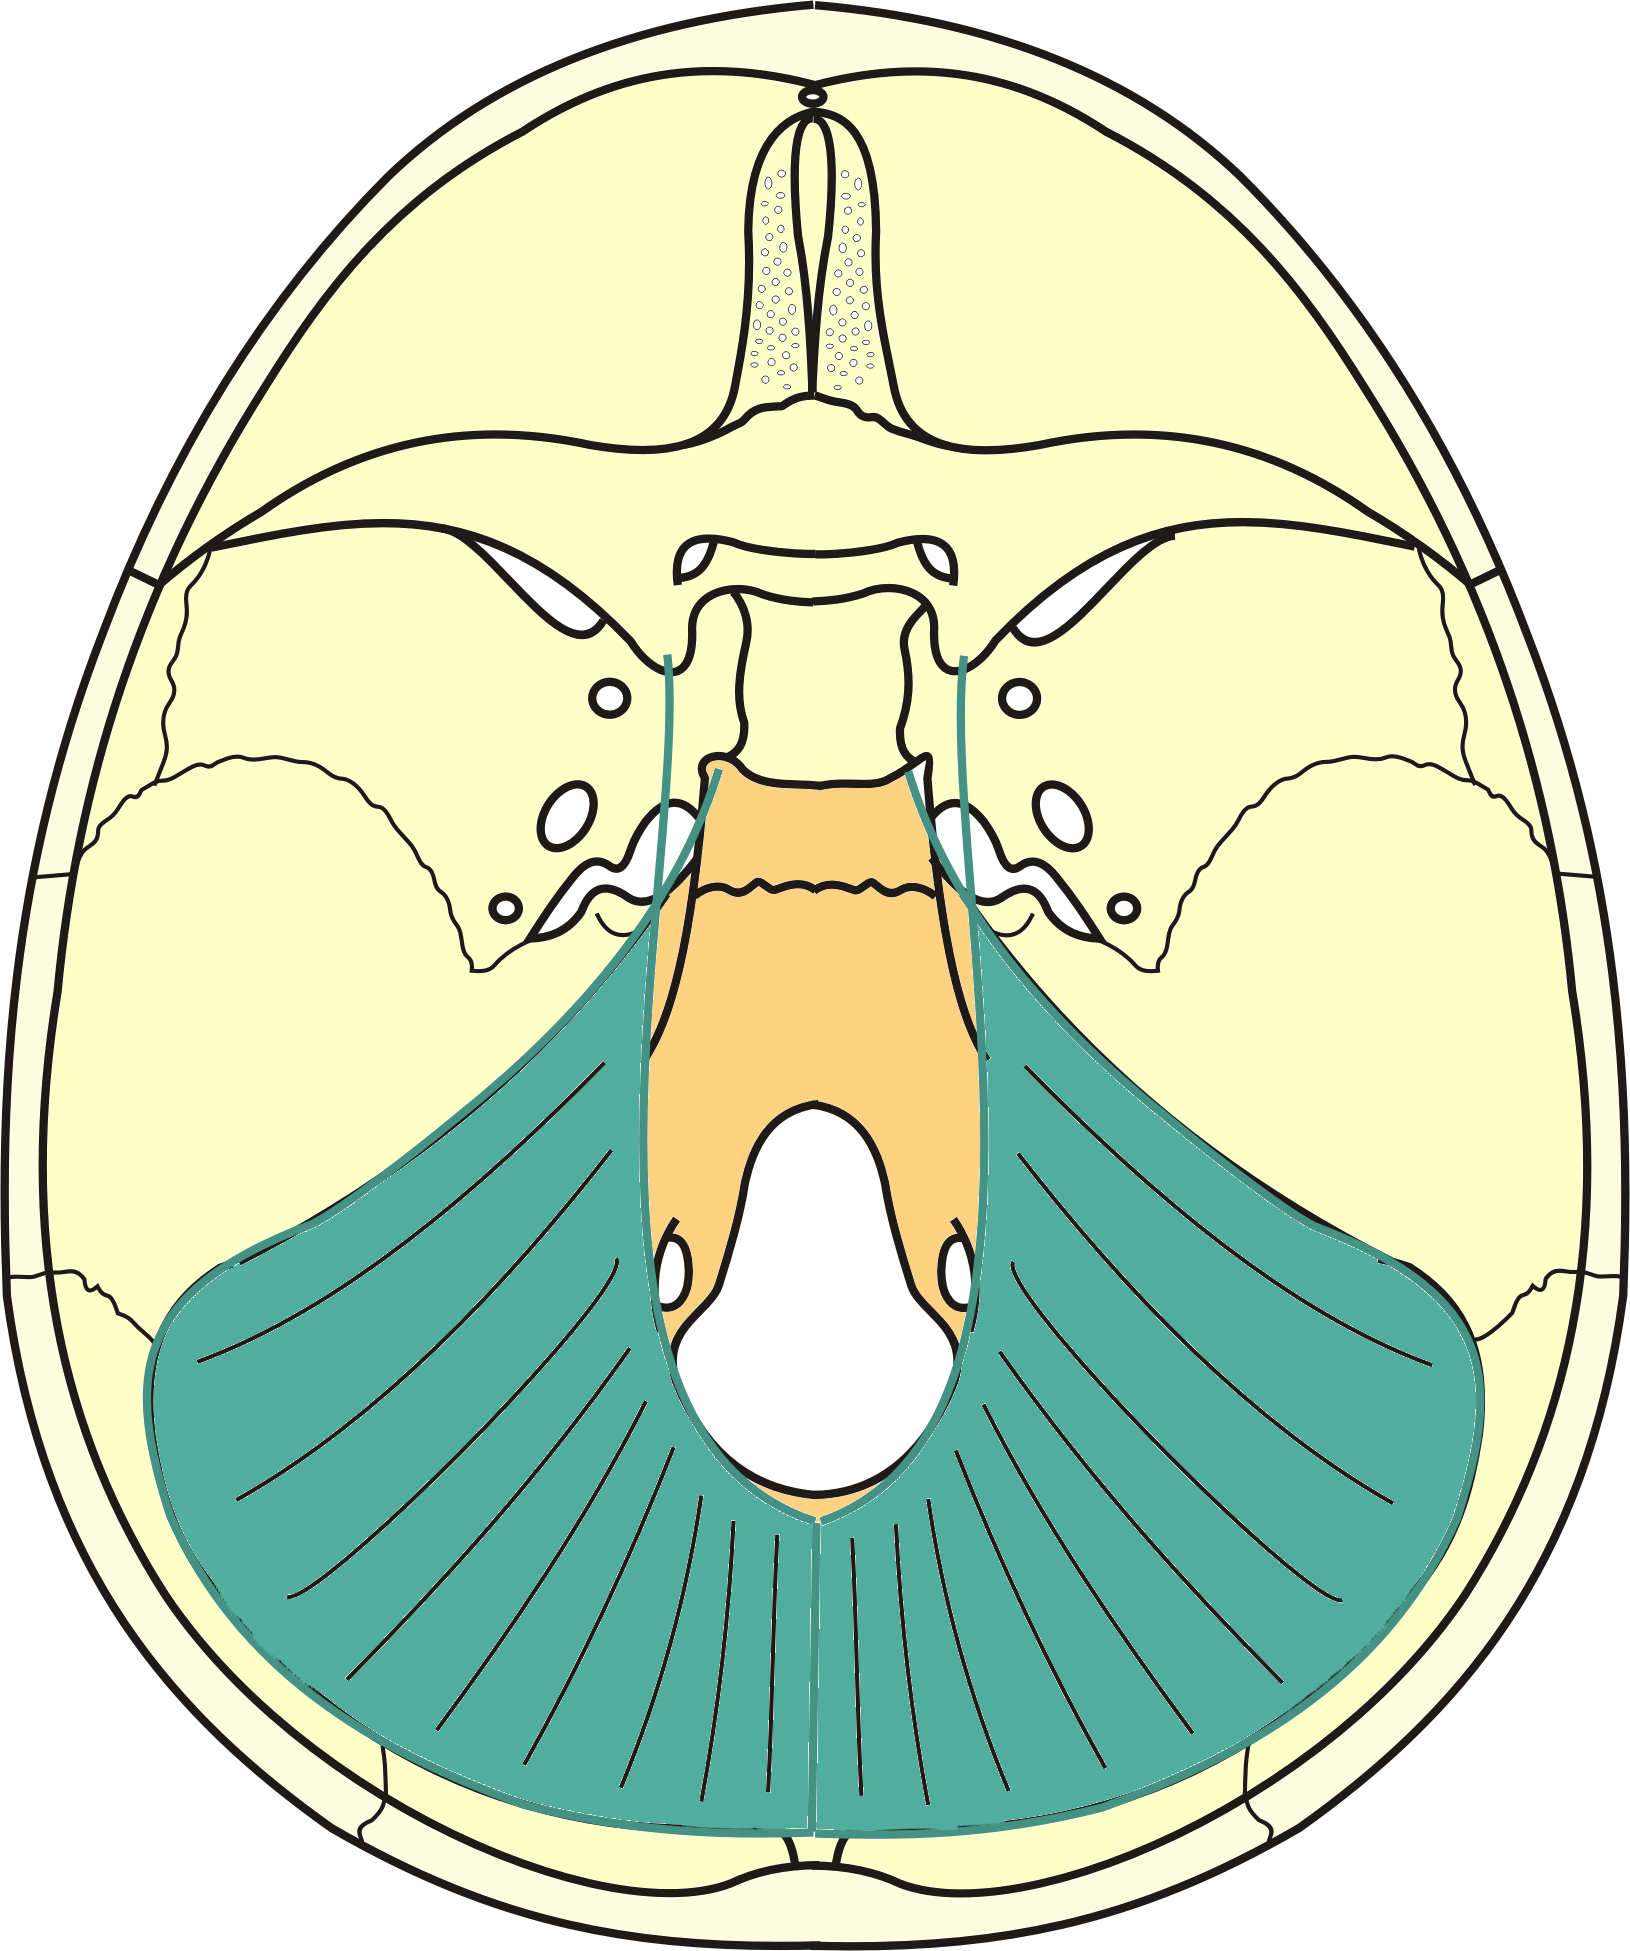 dos de la selle méat acoustique interne clivus partie basilaire foramen jugulaire partie pétreuse os temporal canal condylaire foramen magnum fosse crânienne postérieure os occipital sillon du